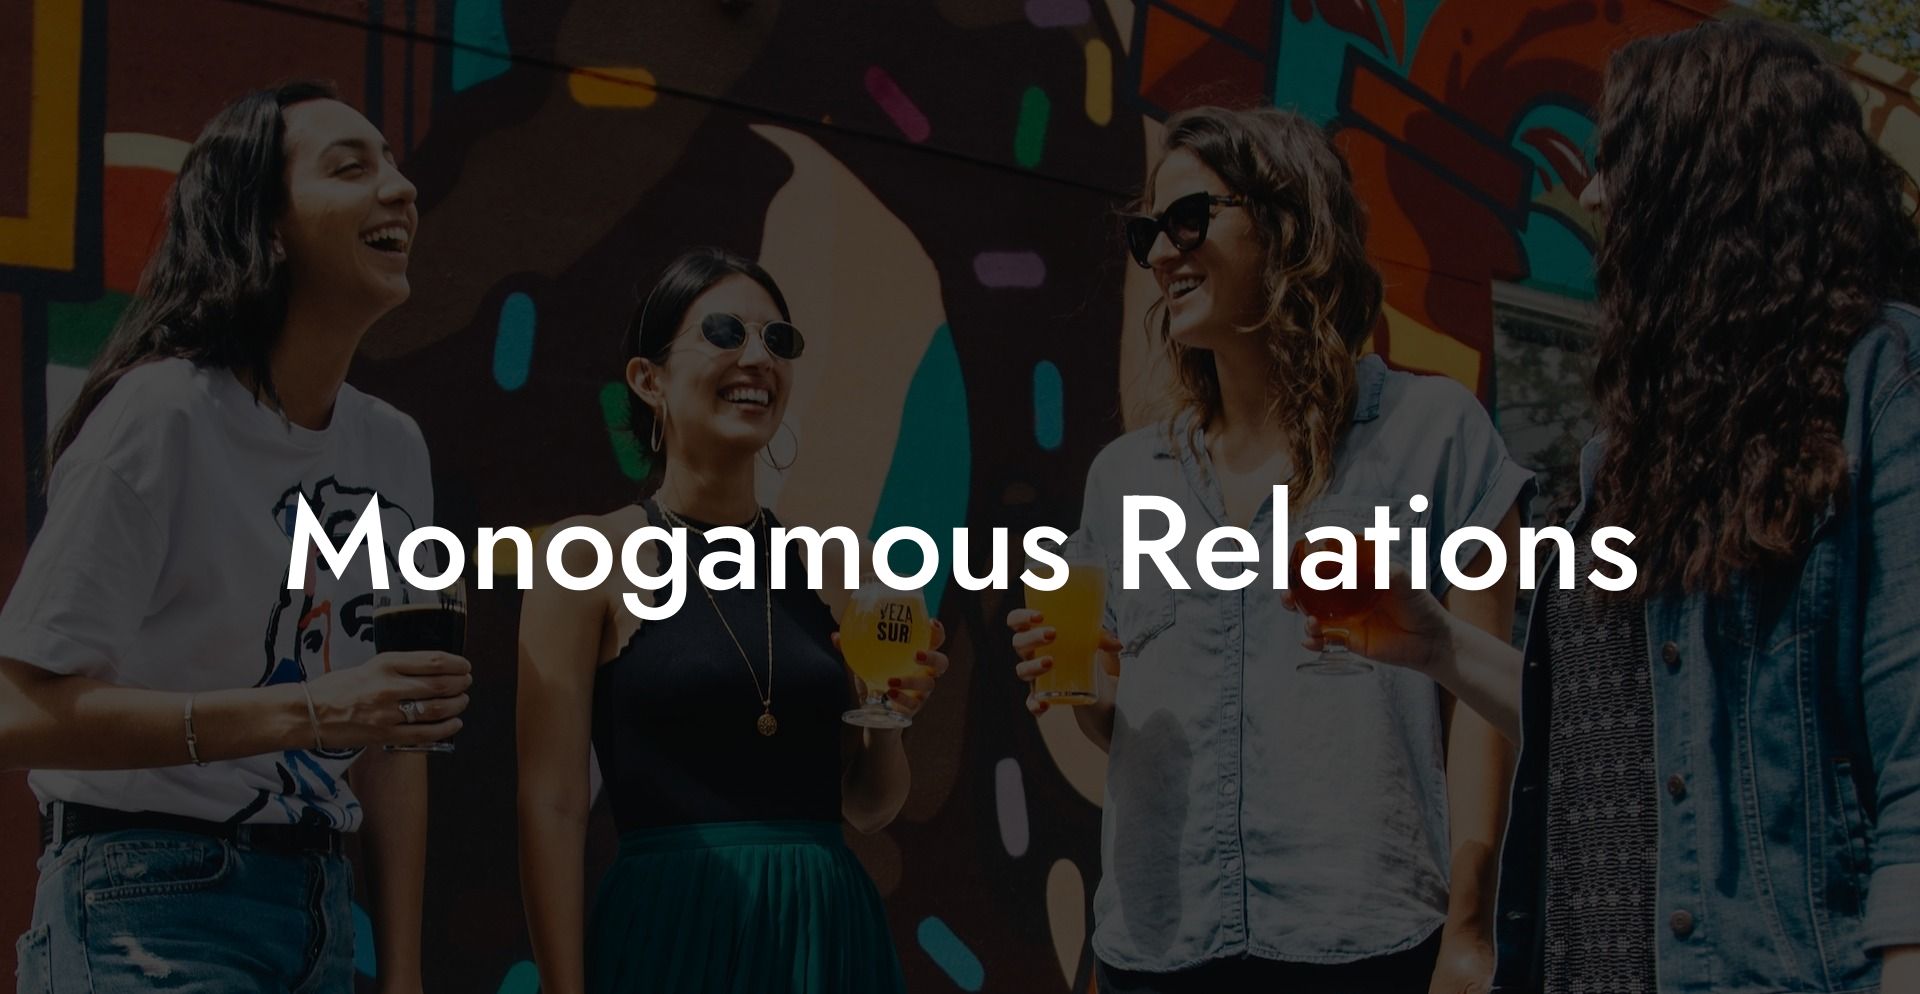 Monogamous Relations